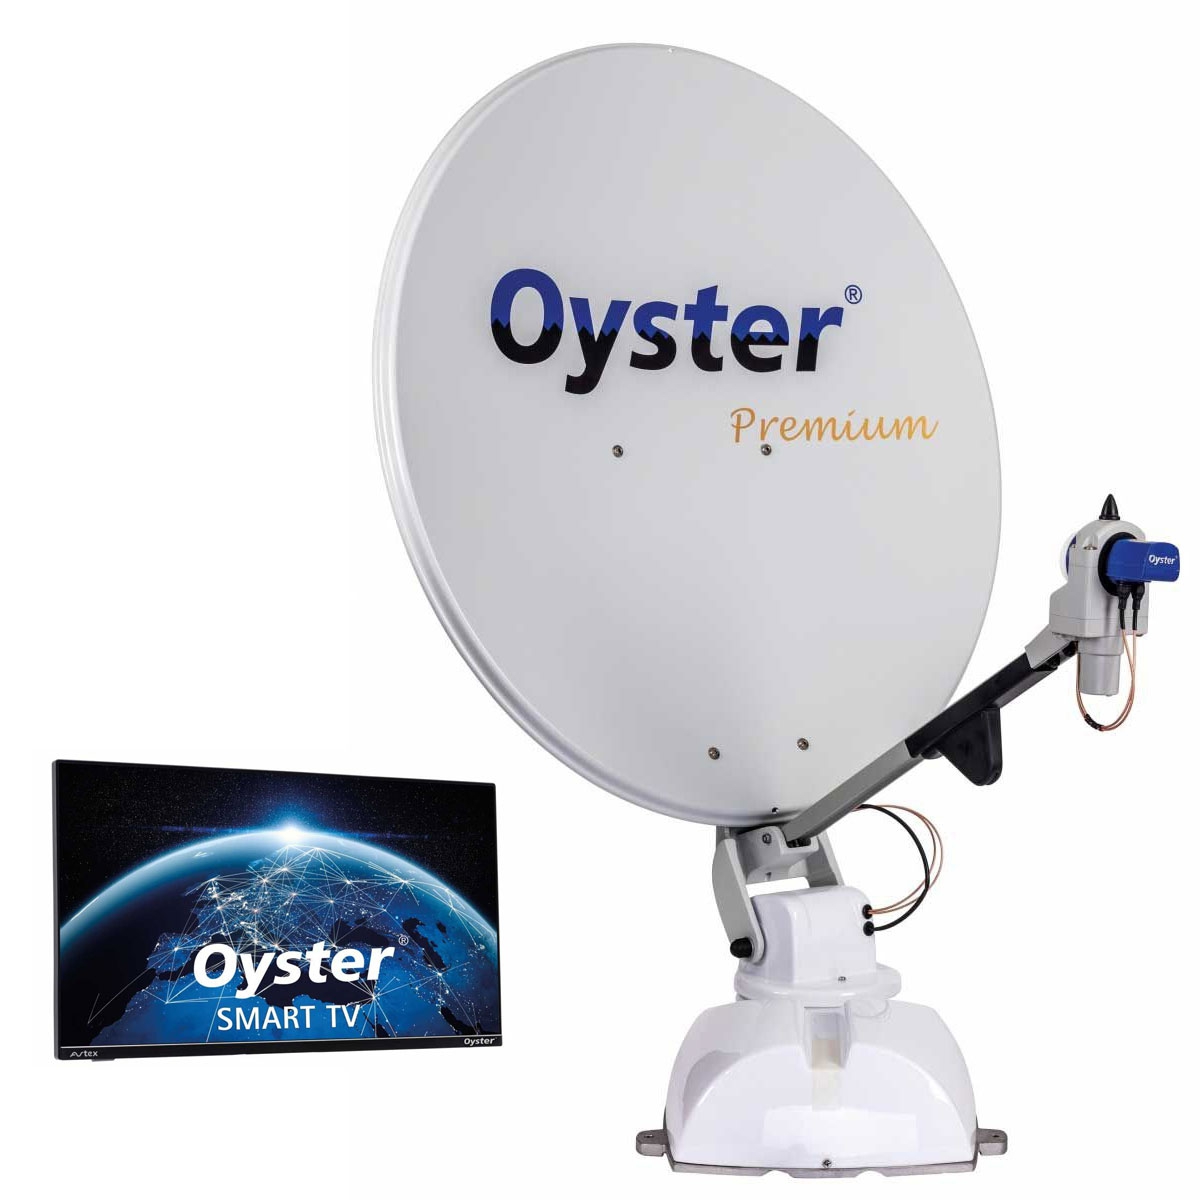 TEN HAAFT Oyster 85 Premium 24 Smart TV - 89025 - 88294